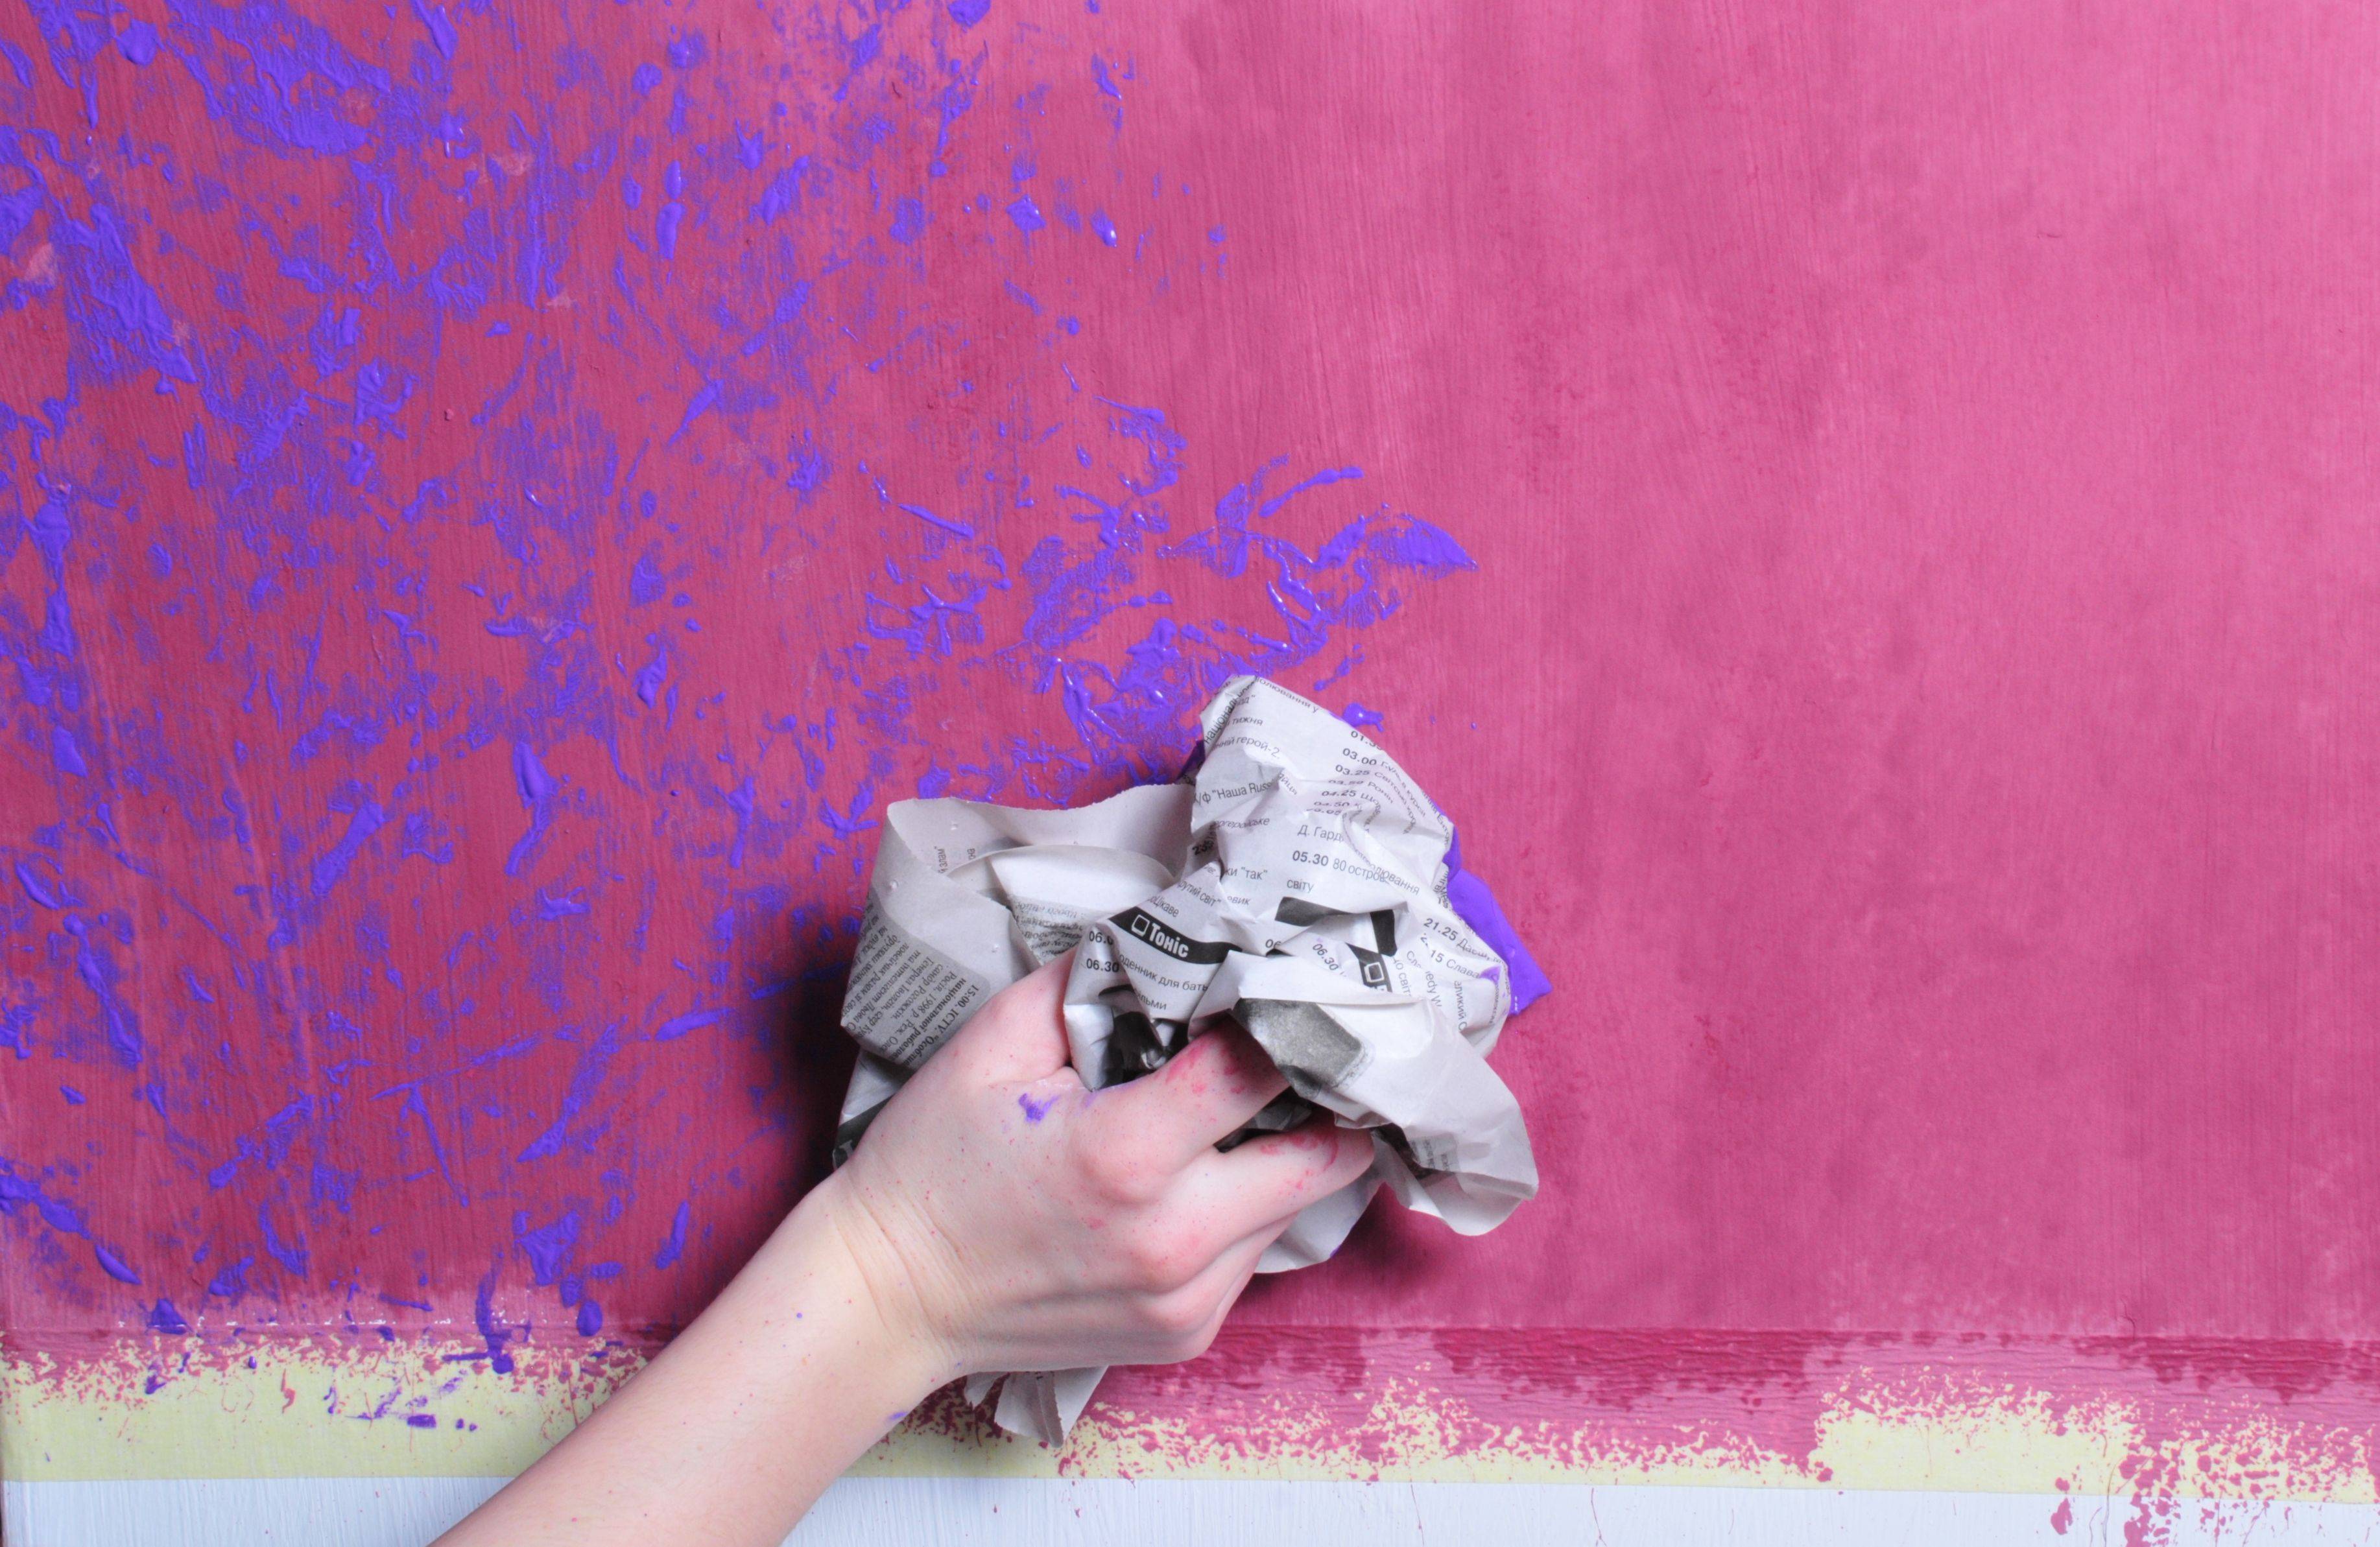 Стоит ли заменять обои краской в квартире: чем покрасить, можно ли выполнить работы  своими руками, и какую краску выбрать на стену